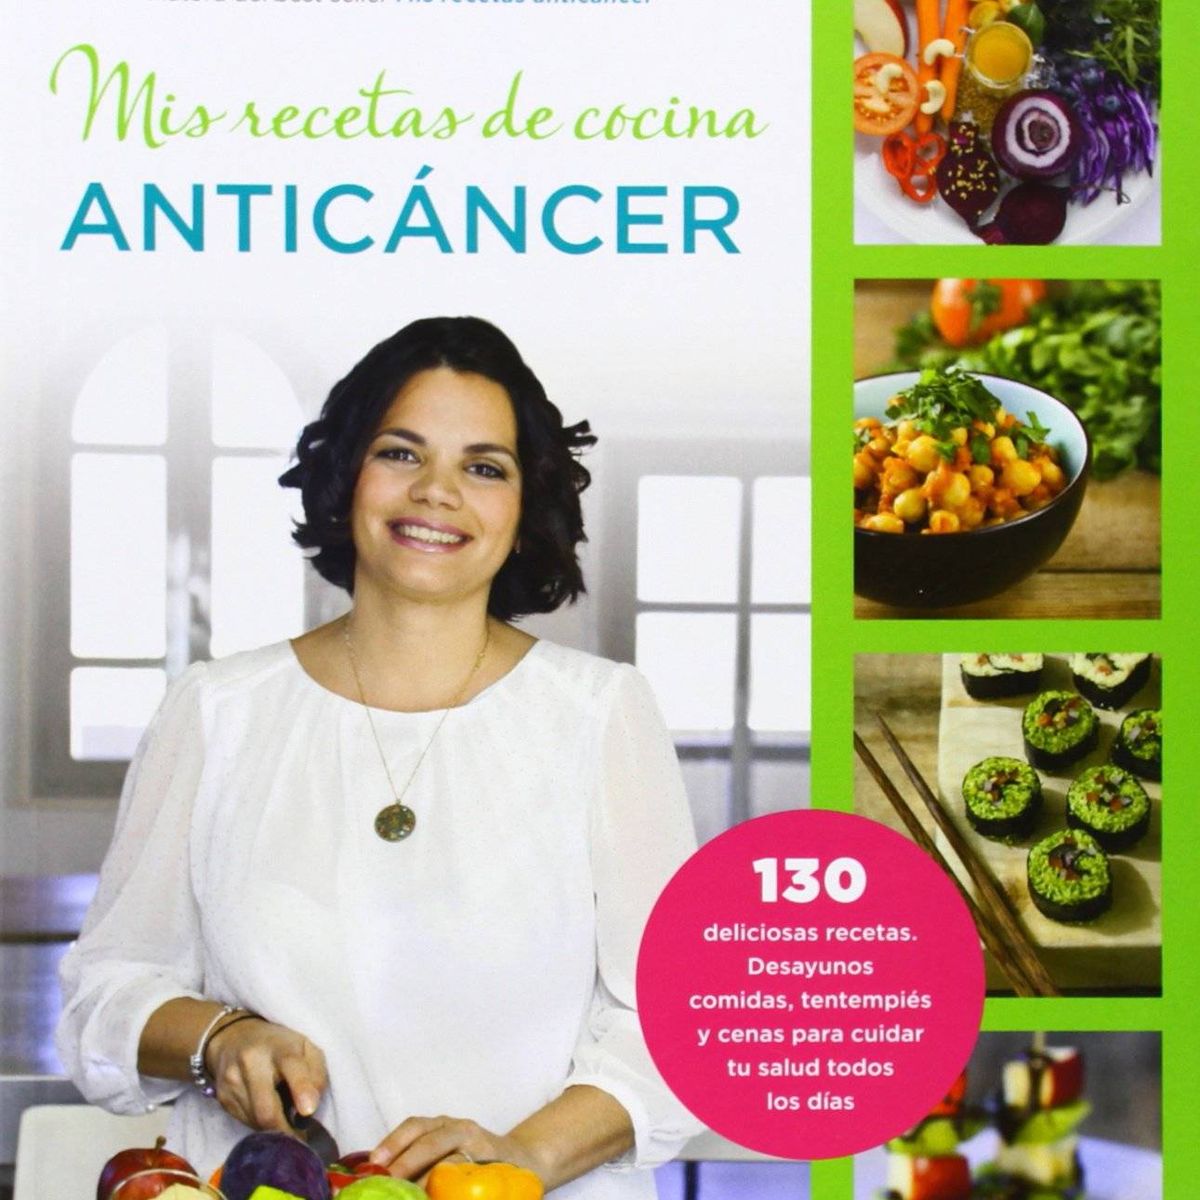 La 'doctora anticáncer' y sus libros milagro: dieta sana, abrazos y  pseudociencia